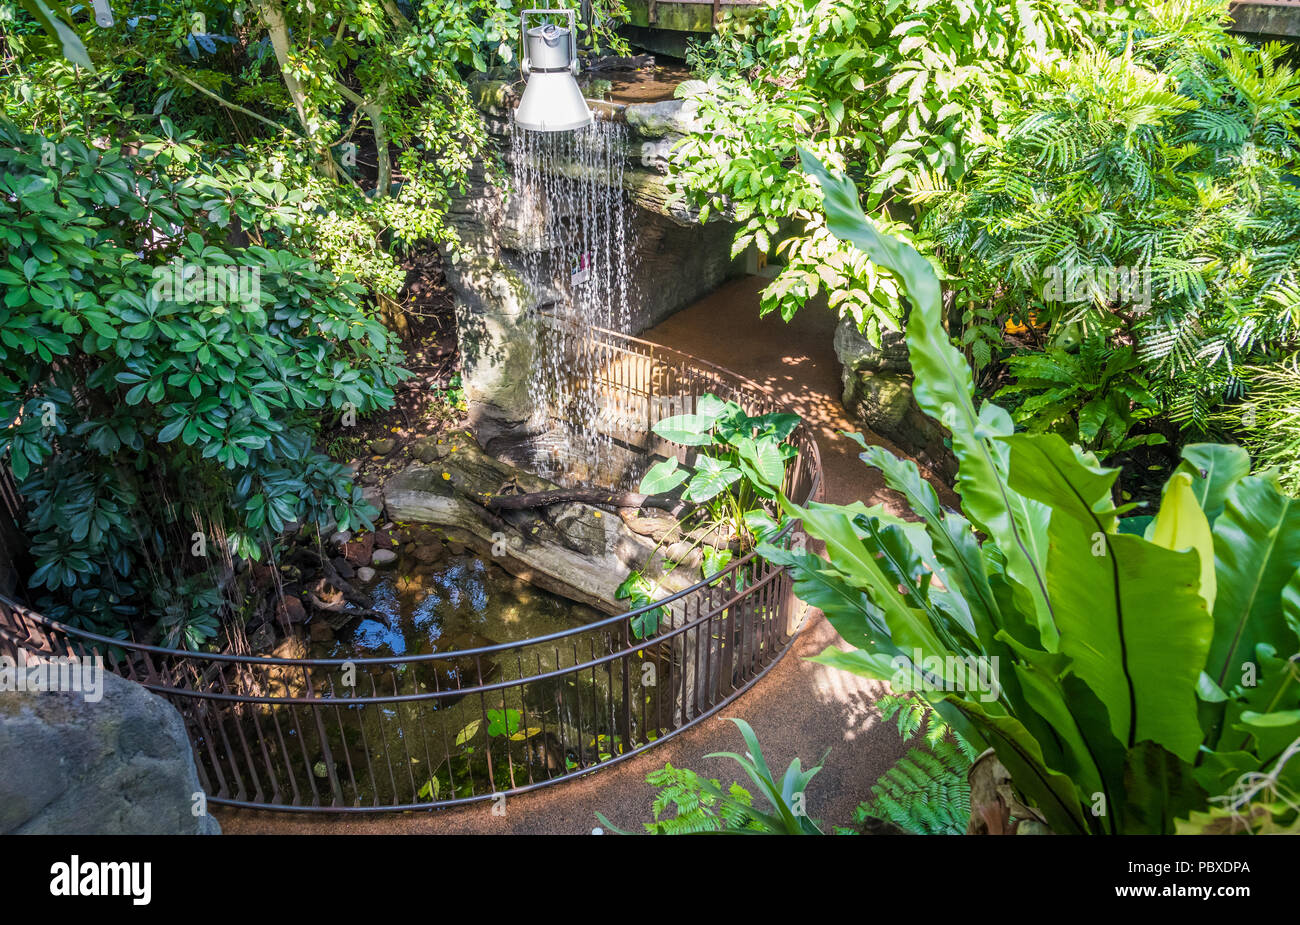 Serra tropicale del Museo della Scienza di Trento, Italia. La serra ricrea una parte della foresta pluviale africana con cascate e veget univoco Foto Stock